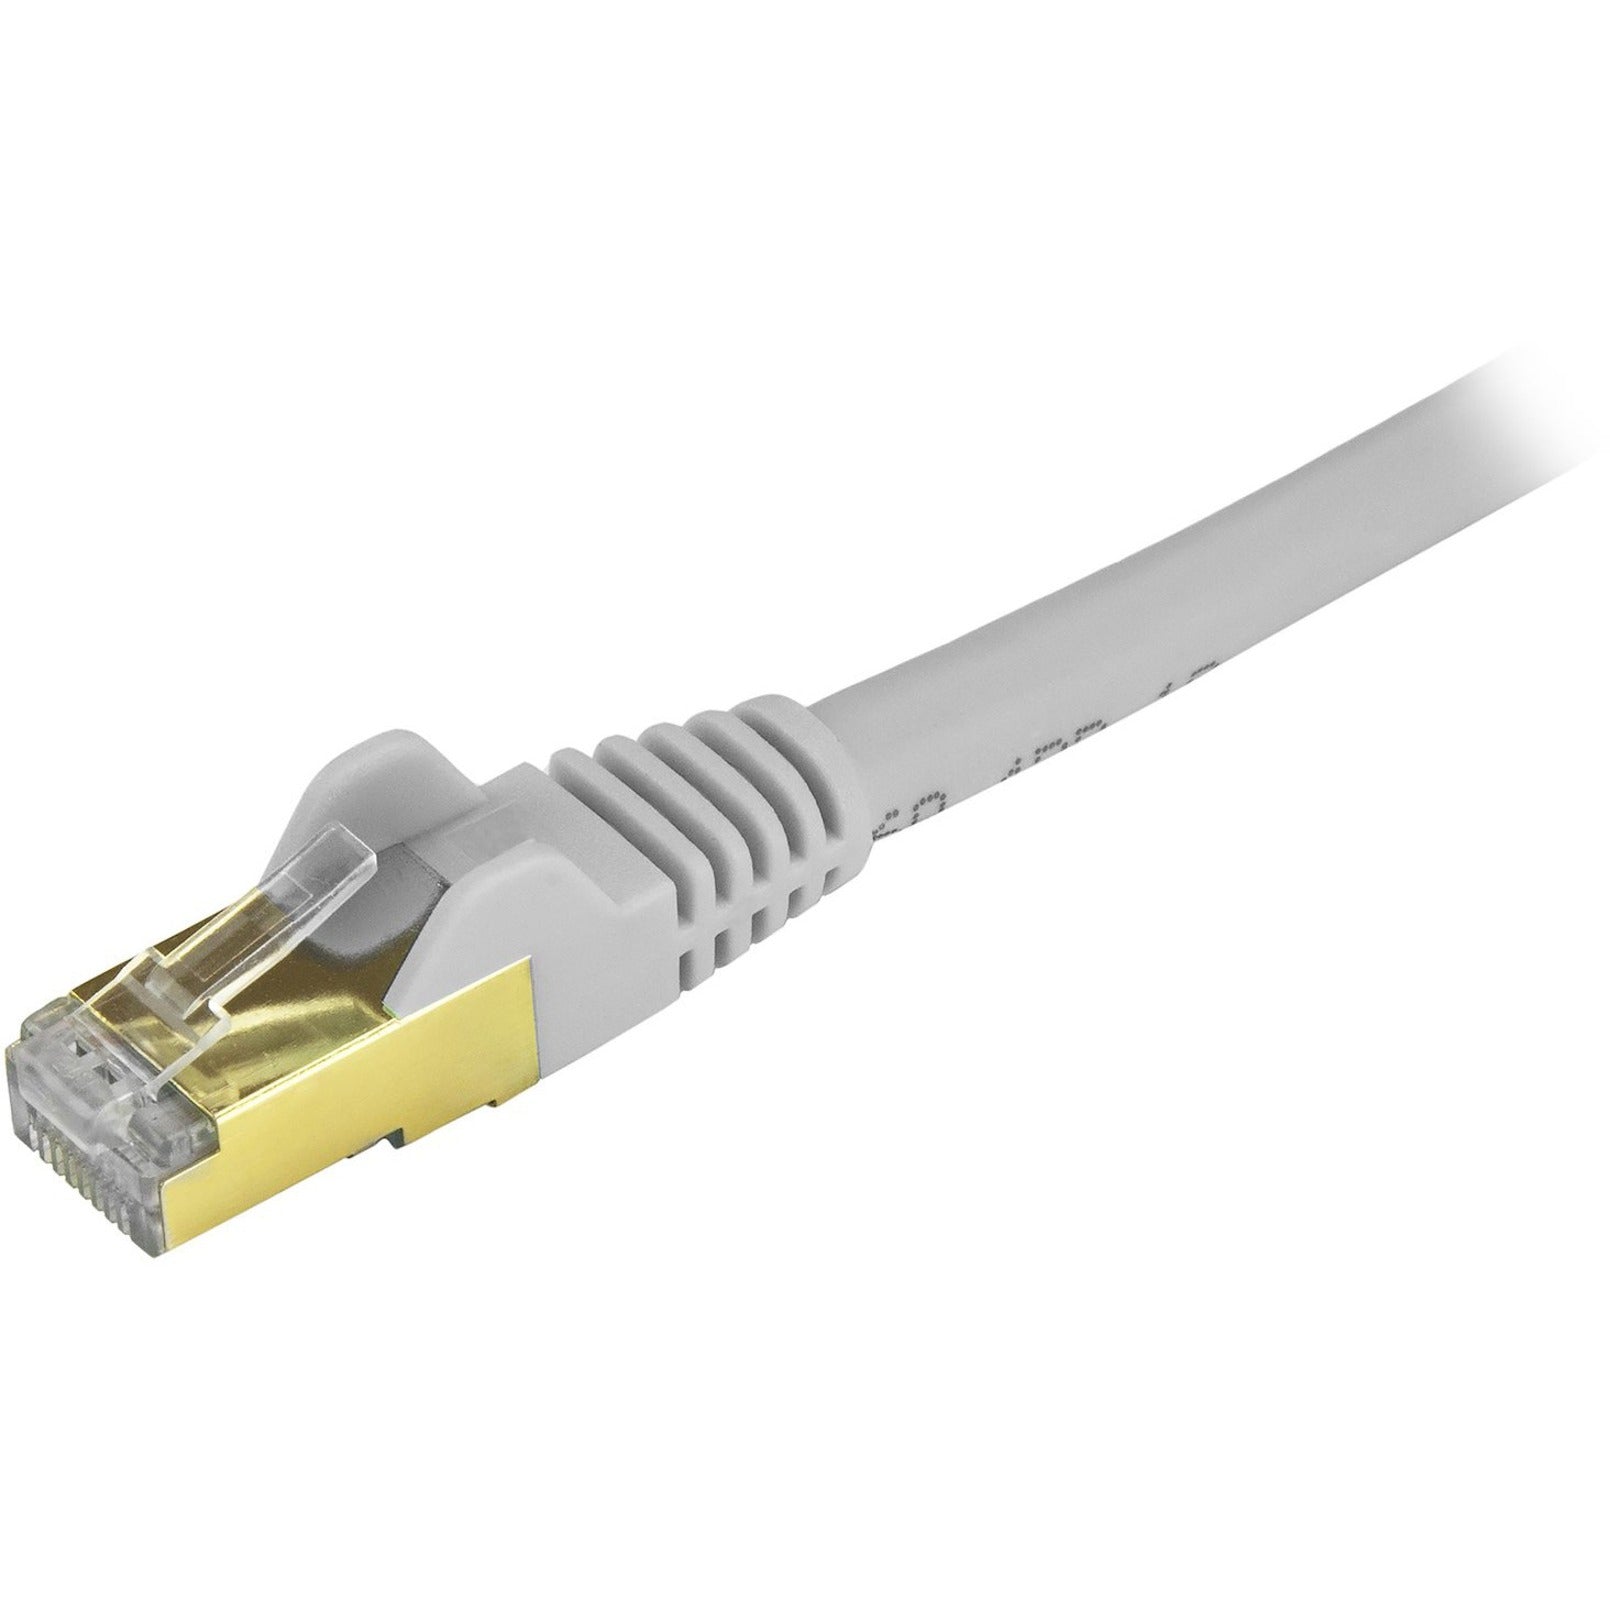 Marca: StarTech.com Cable de parche Ethernet Cat6a blindado (STP) de 4 pies Gris Cable Ethernet con conector RJ45 sin enganches